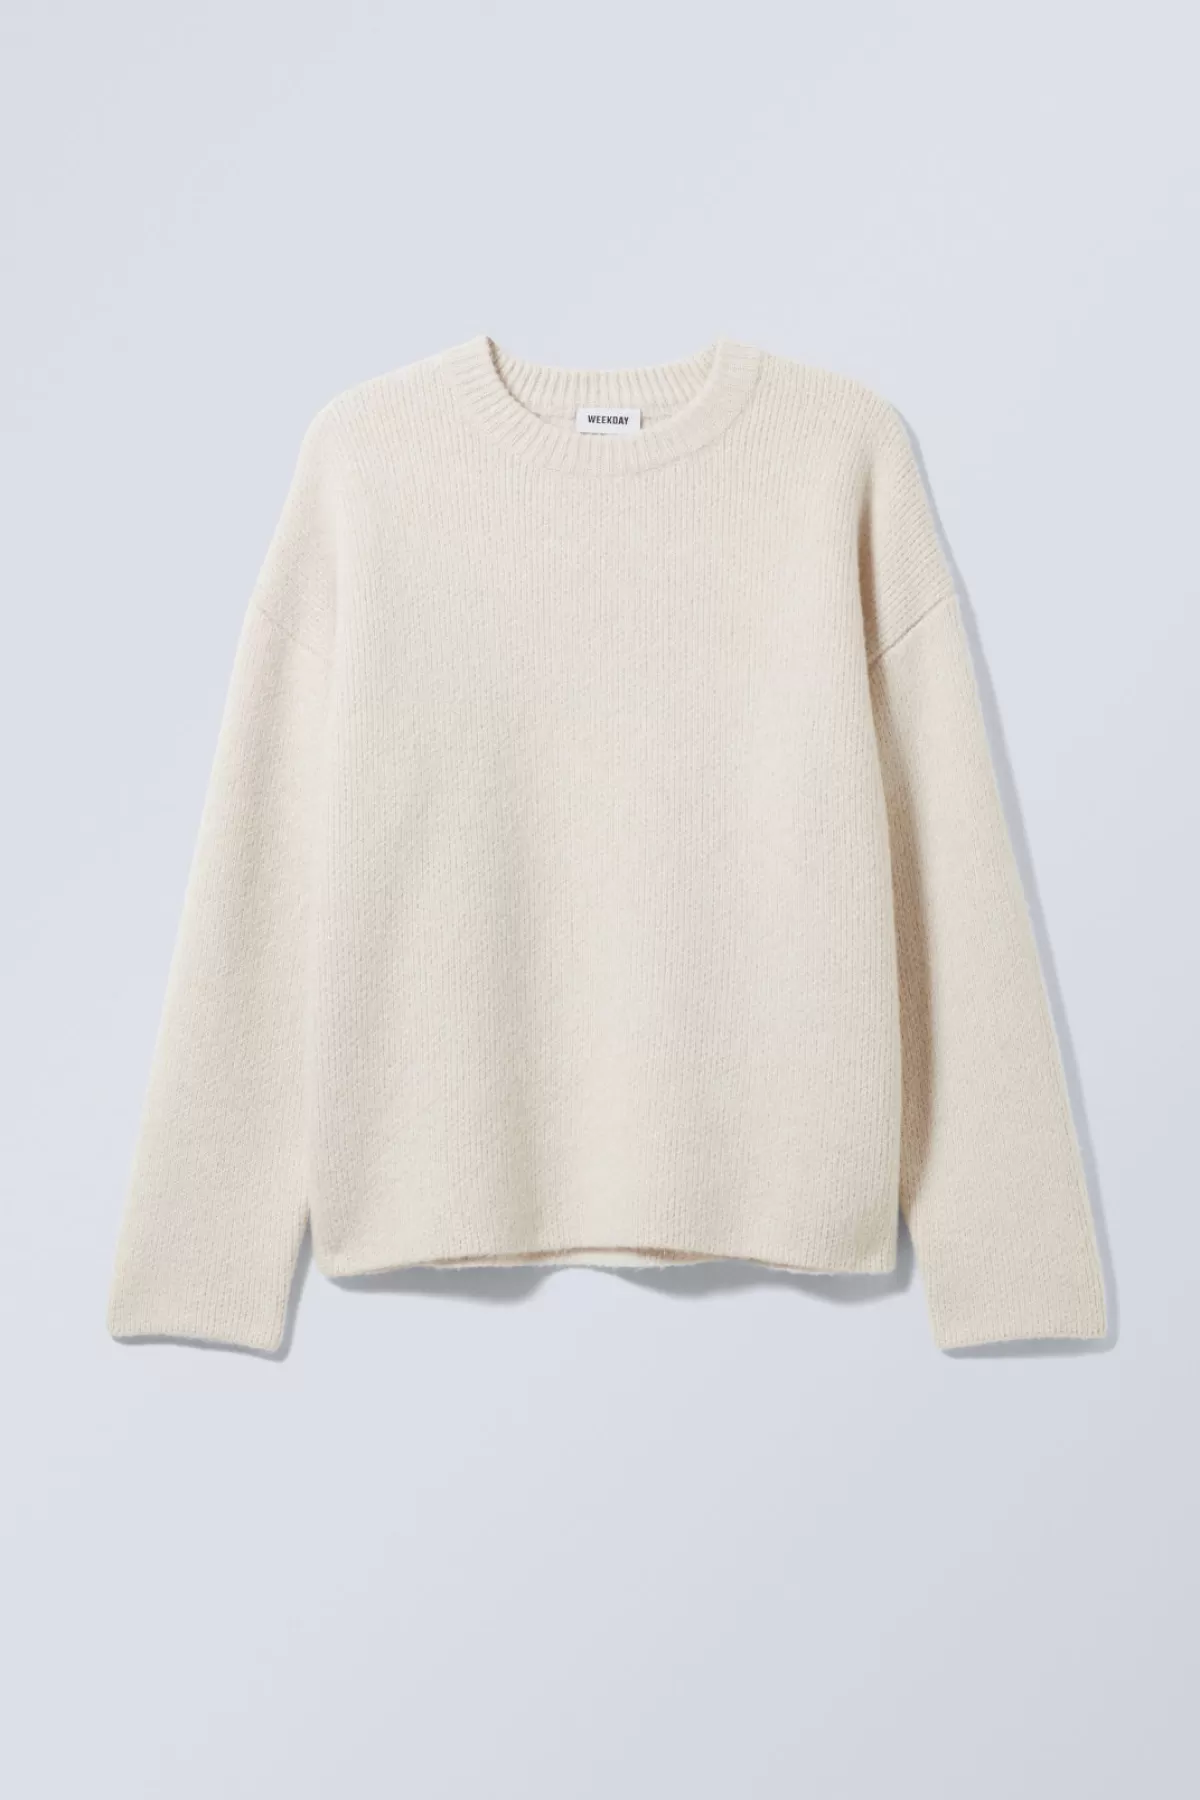 Weekday Teo Oversized Wool Blend Knit Sweater Ecru Best Sale